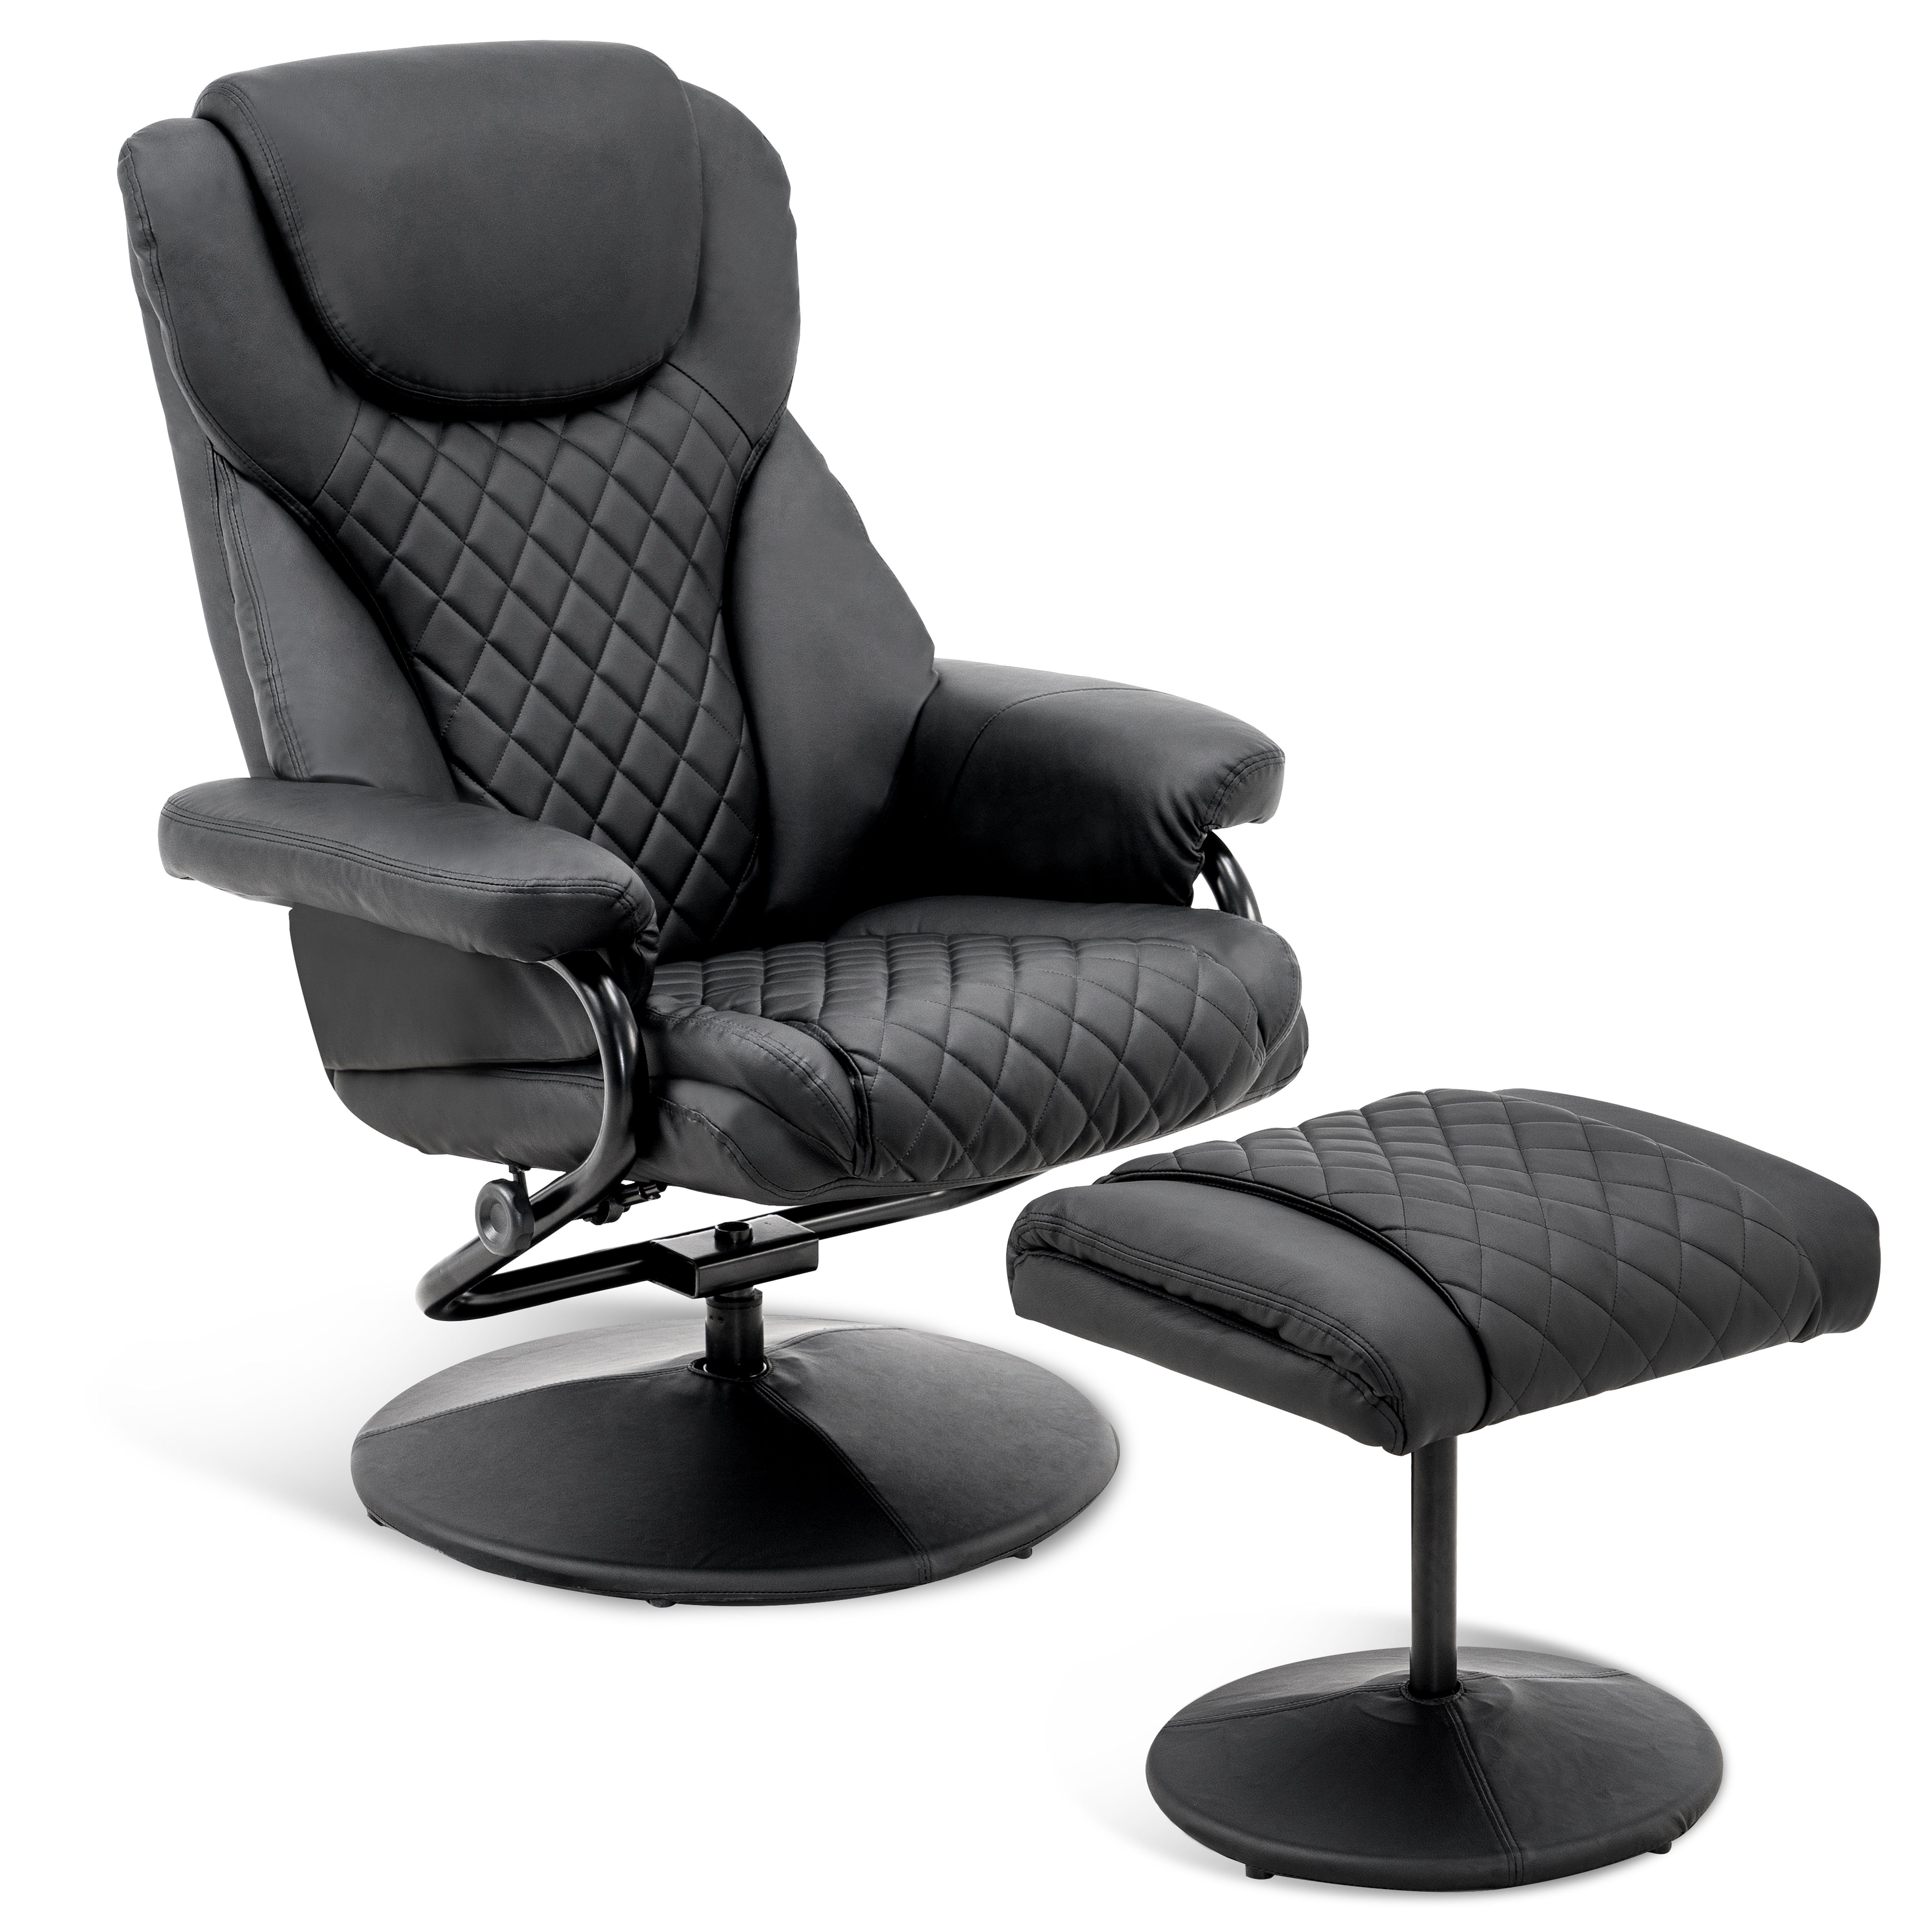 MCombo TV-Sessel Mcombo Relaxsessel mit Hocker 9022, 360°drehbarer mit Liegefunktion, Fernsehsessel, moderner TV-Sessel für Wohnzimmer, Kunstleder, 142 x 78 x 111 cm Schwarz